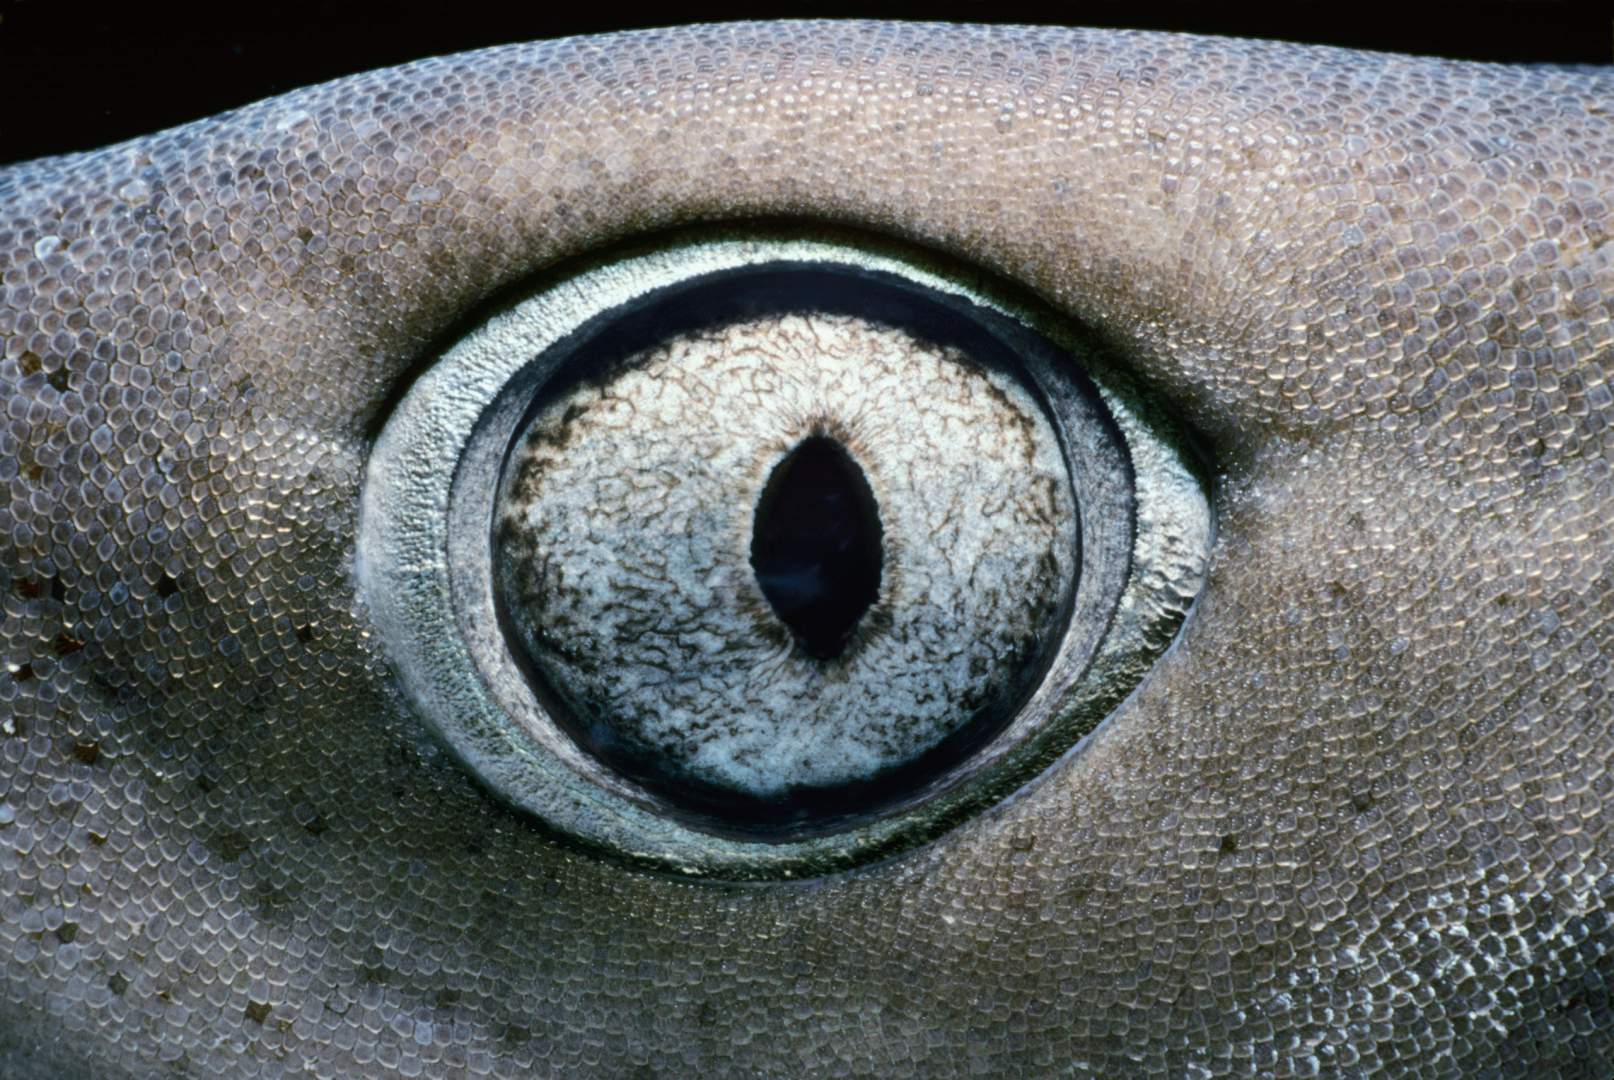 Глаз акулы